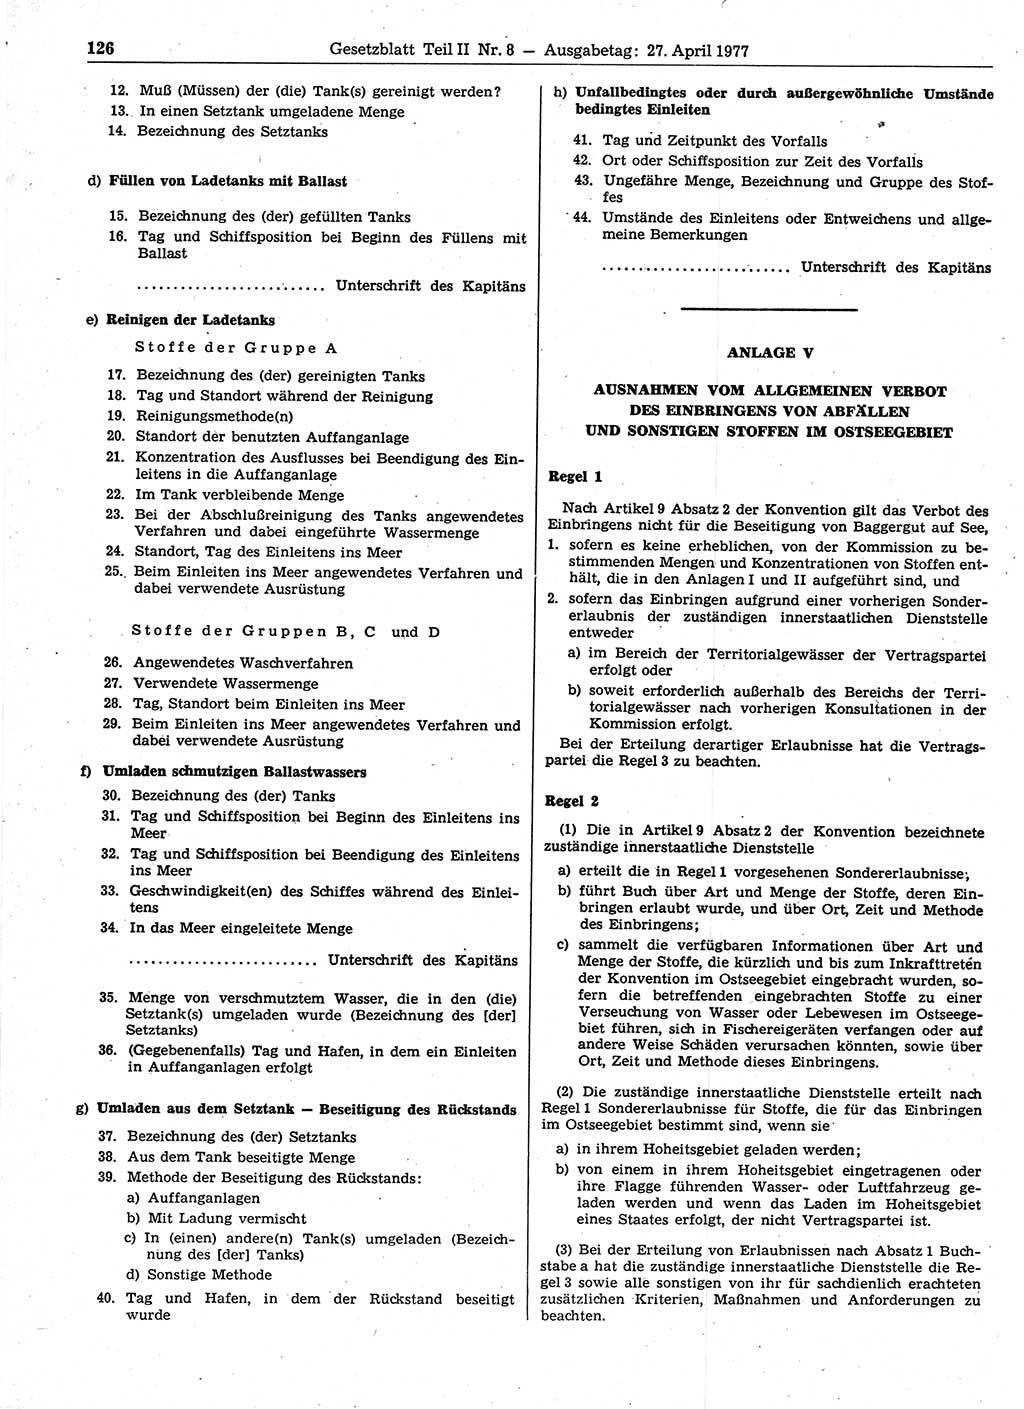 Gesetzblatt (GBl.) der Deutschen Demokratischen Republik (DDR) Teil ⅠⅠ 1977, Seite 126 (GBl. DDR ⅠⅠ 1977, S. 126)